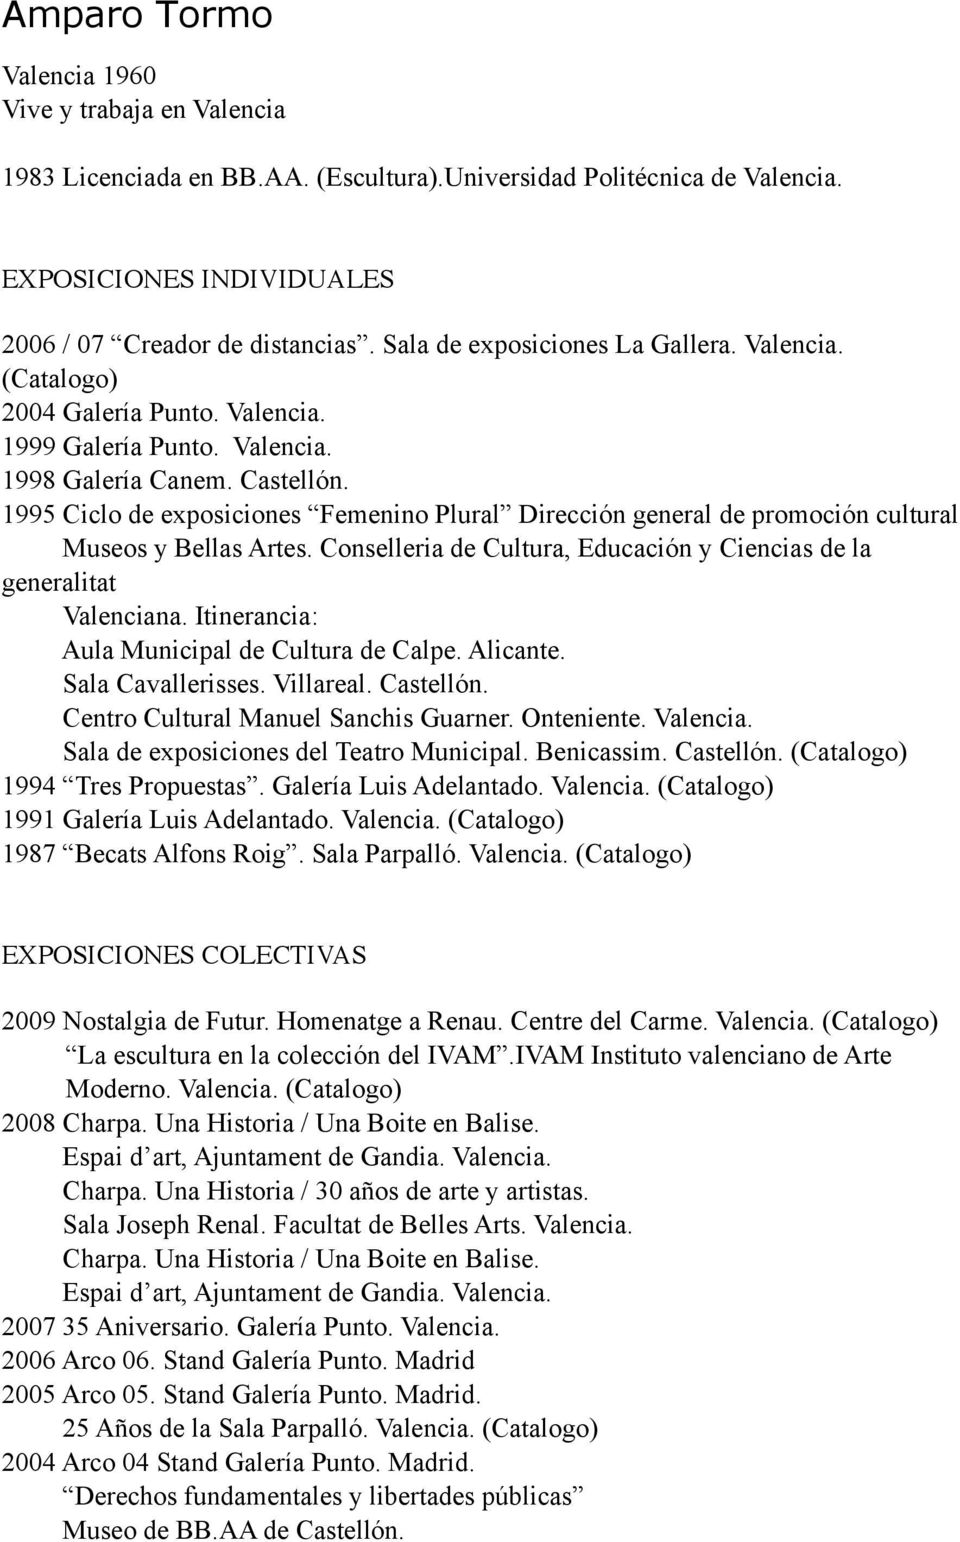 1995 Ciclo de exposiciones Femenino Plural Dirección general de promoción cultural Museos y Bellas Artes. Conselleria de Cultura, Educación y Ciencias de la generalitat Valenciana.